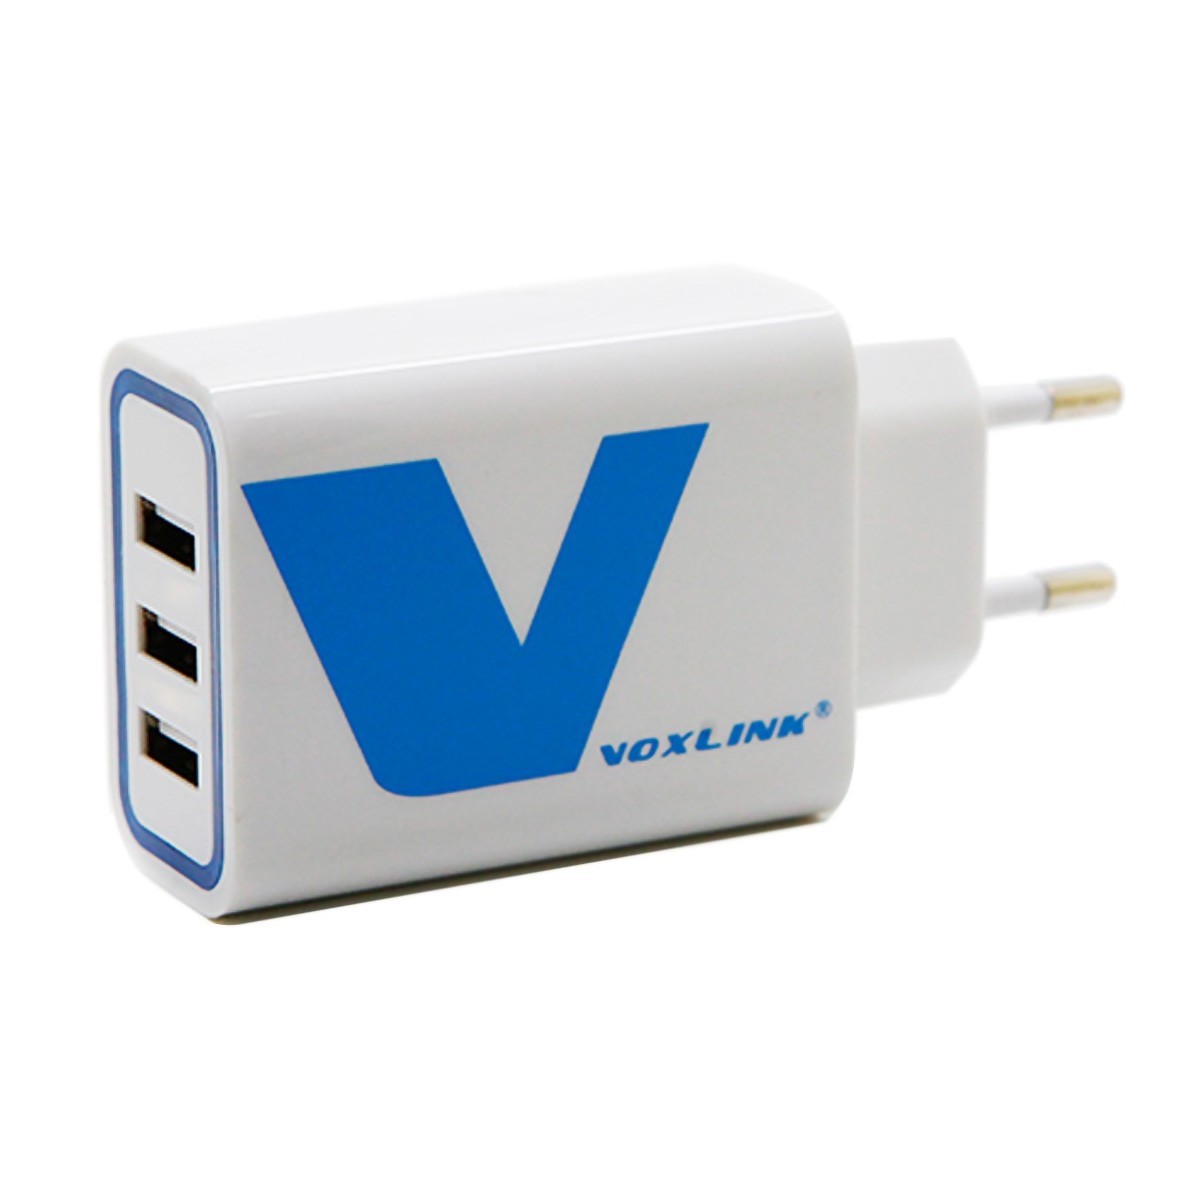 VOXLINK 24W 2-port USB Charger travel Adapter 5V/4.8A Intelligent Detect Charging black 24W 2 Port EU